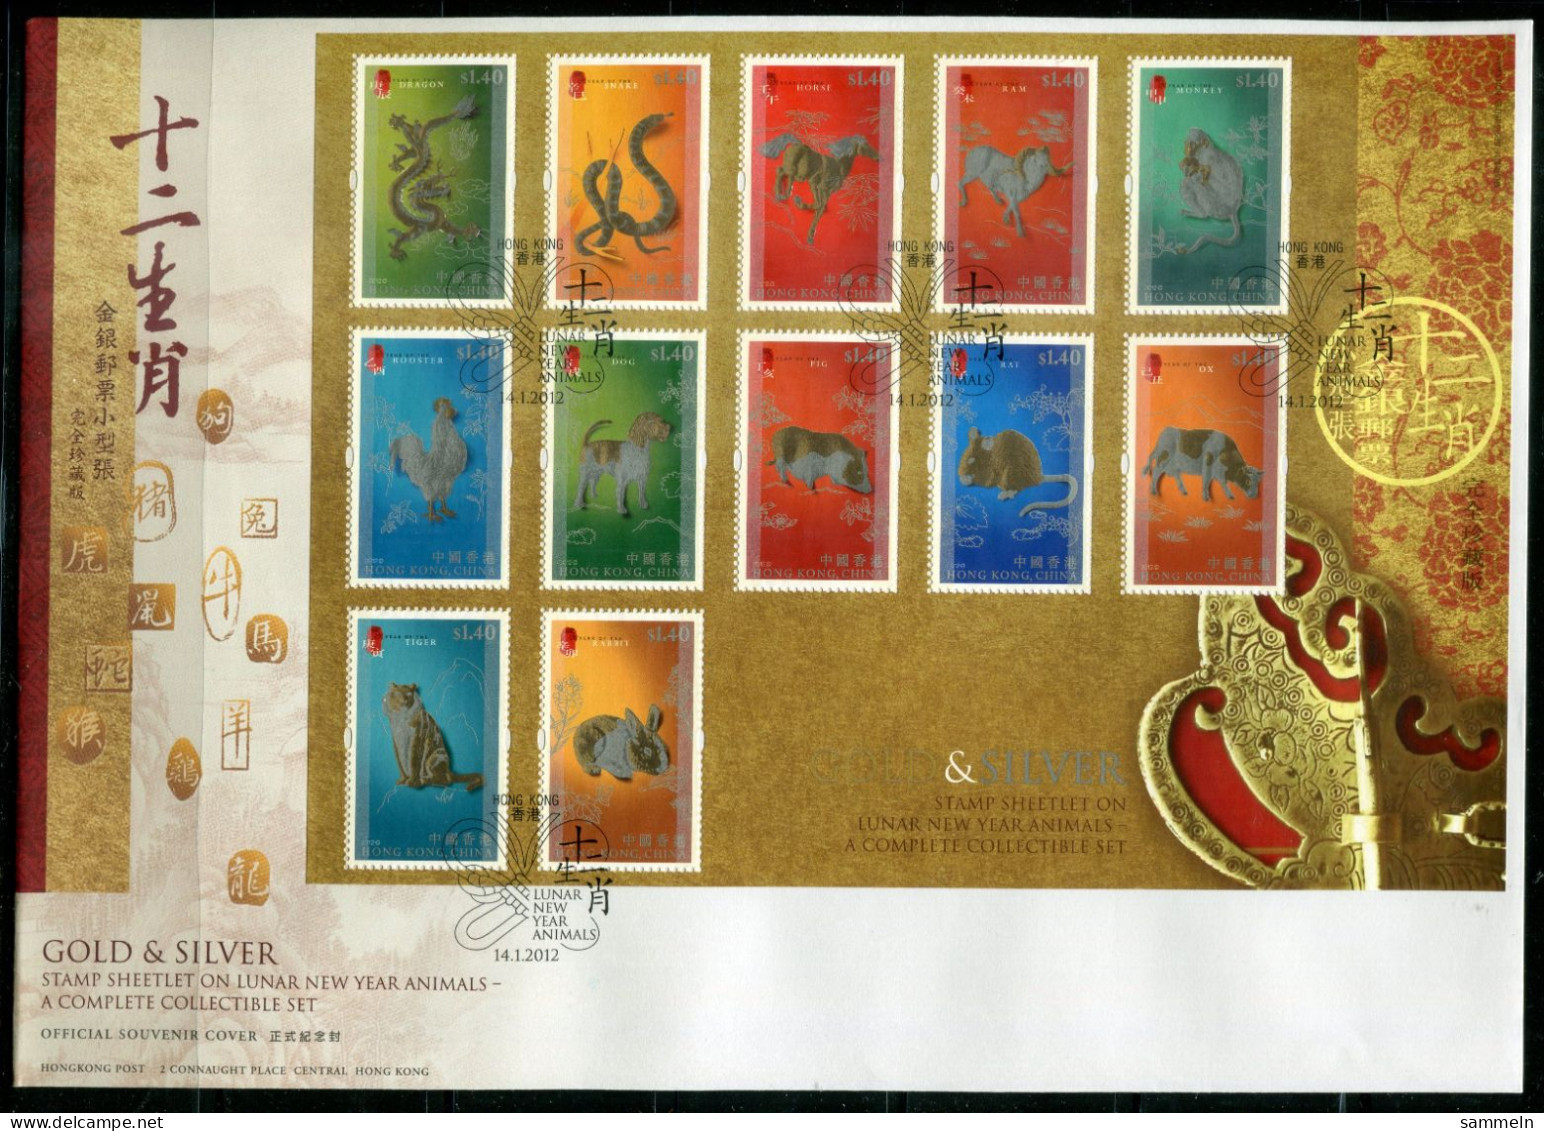 HONGKONG Block 240+241, Bl.240+241 FDC (2) - Chinesische Sternzeichen, Lunar New Year Animals - HONG KONG - Hojas Bloque